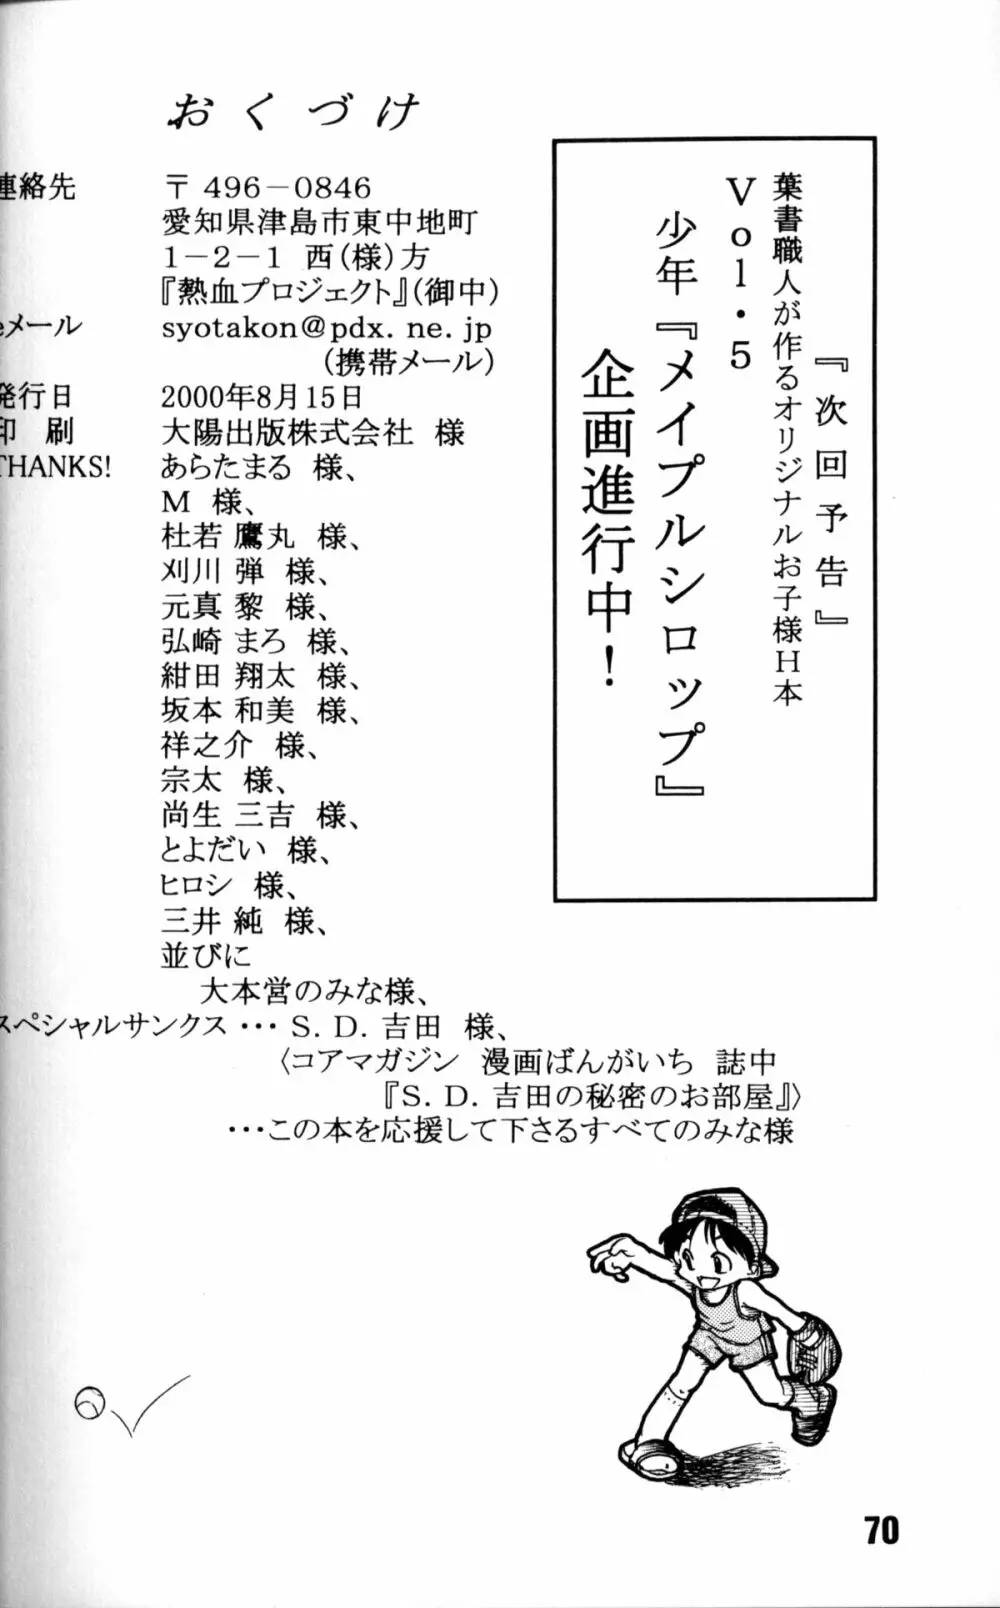 Anthology - Nekketsu Project - Volume 4 'Shounen Vanilla Essence' Page.69